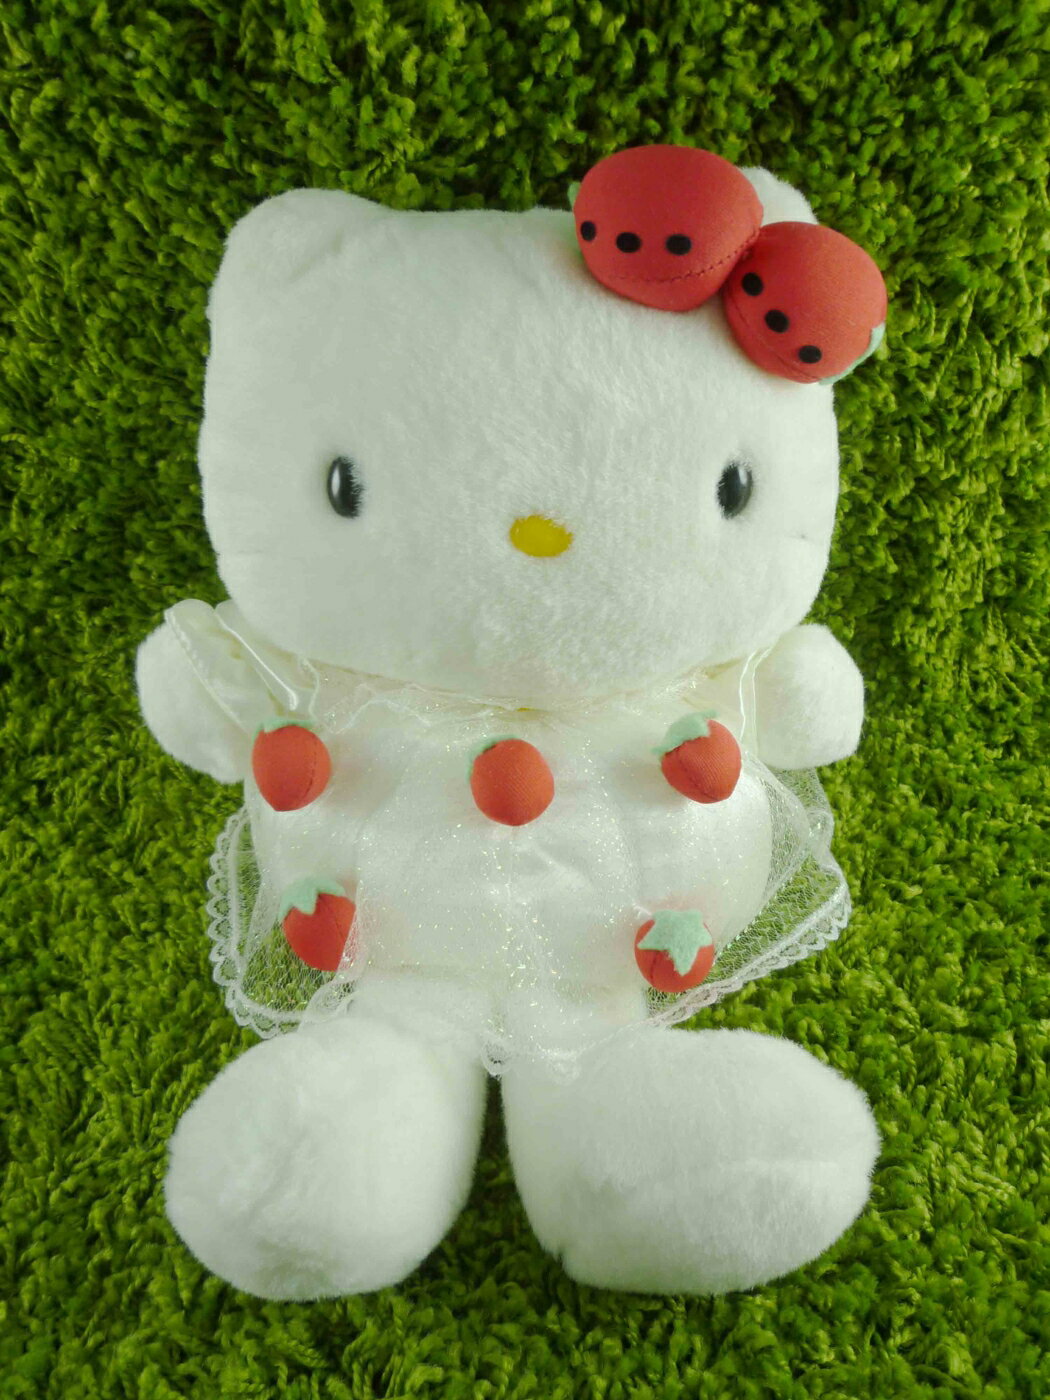 【震撼精品百貨】Hello Kitty 凱蒂貓 絨毛娃娃-草莓(S) 震撼日式精品百貨